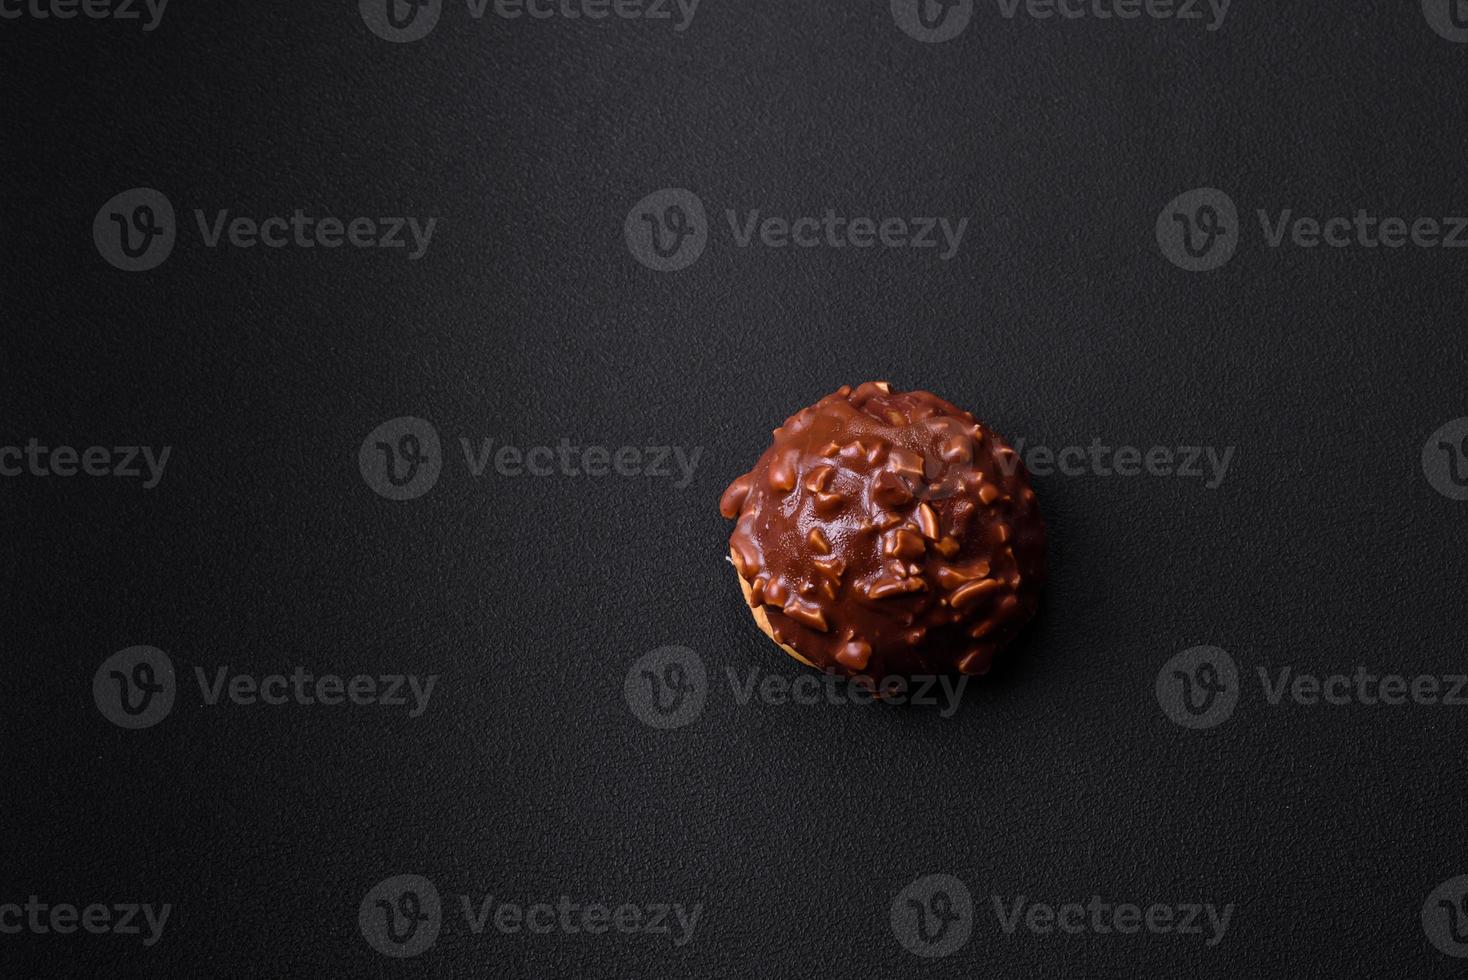 utsökt choklad syrlig med nötter på en svart keramisk tallrik foto